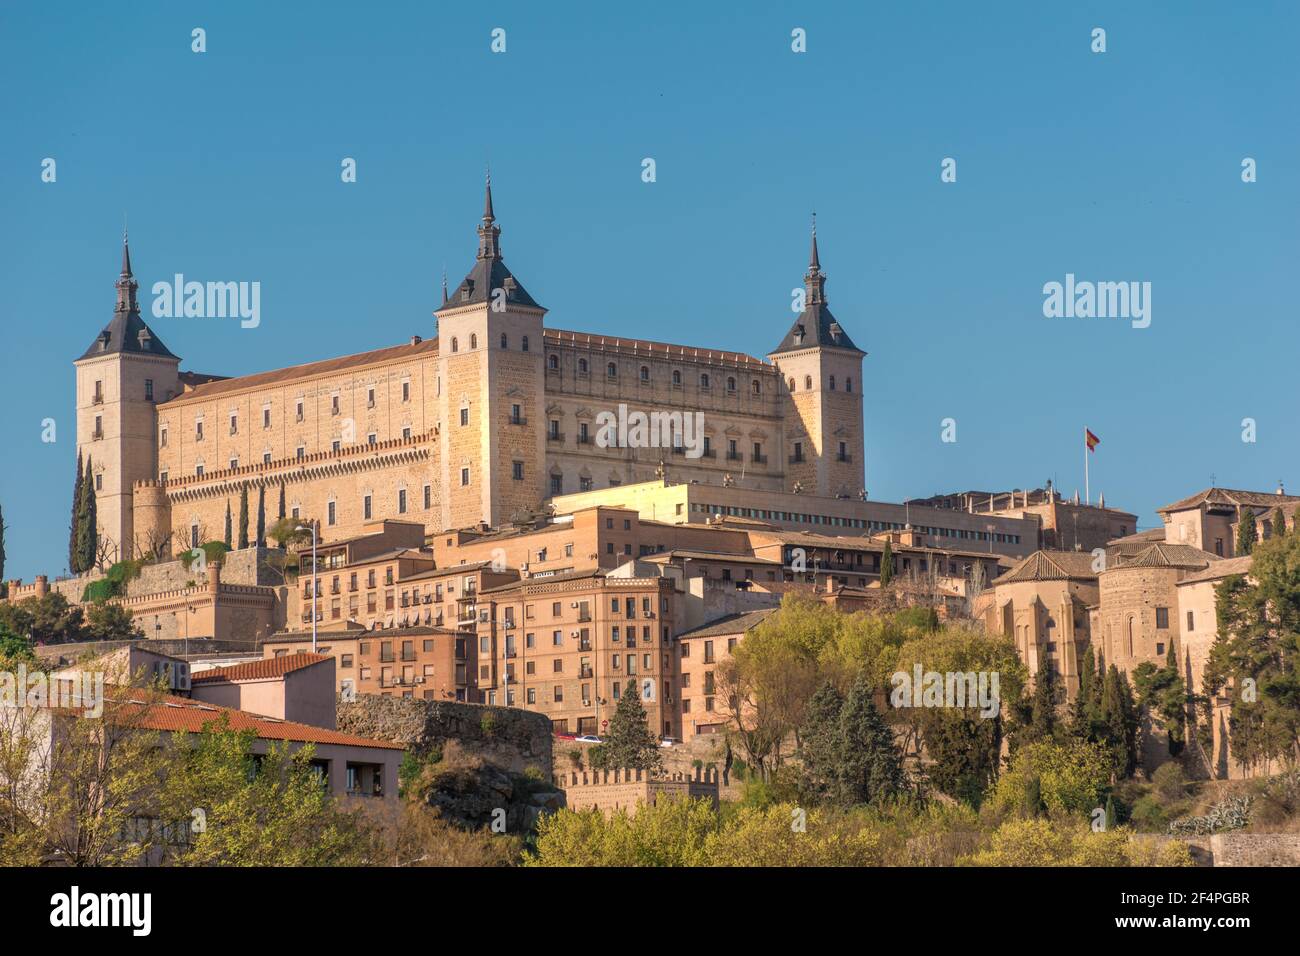 Horizontal view of the building known as "El Alcazar de Toledo" Stock Photo